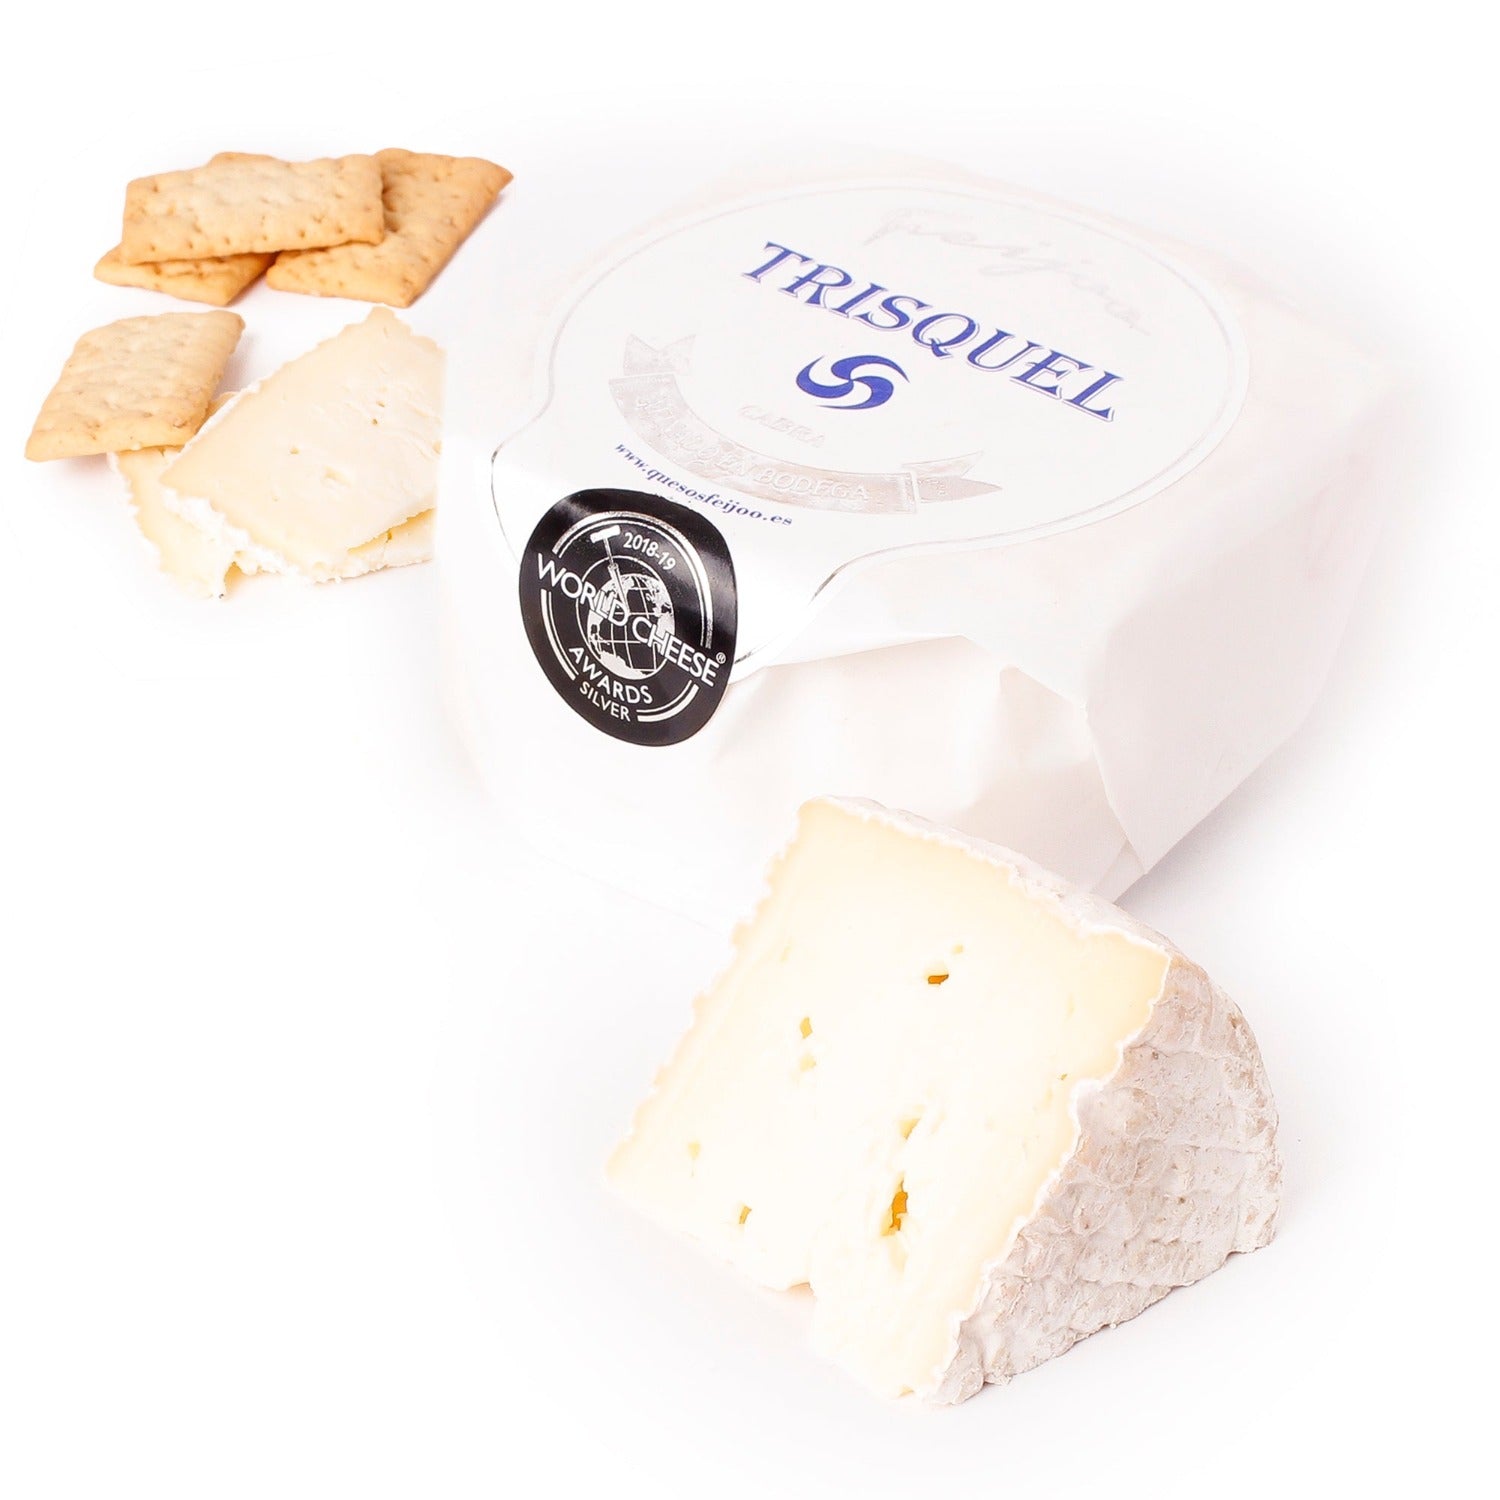 Imagen de queso camembert de cabra Trisquel en su envoltorio junto a un trozo cortado al lado, con letras azules del Trisquel y el logotipo de la medalla del World Cheese Award.